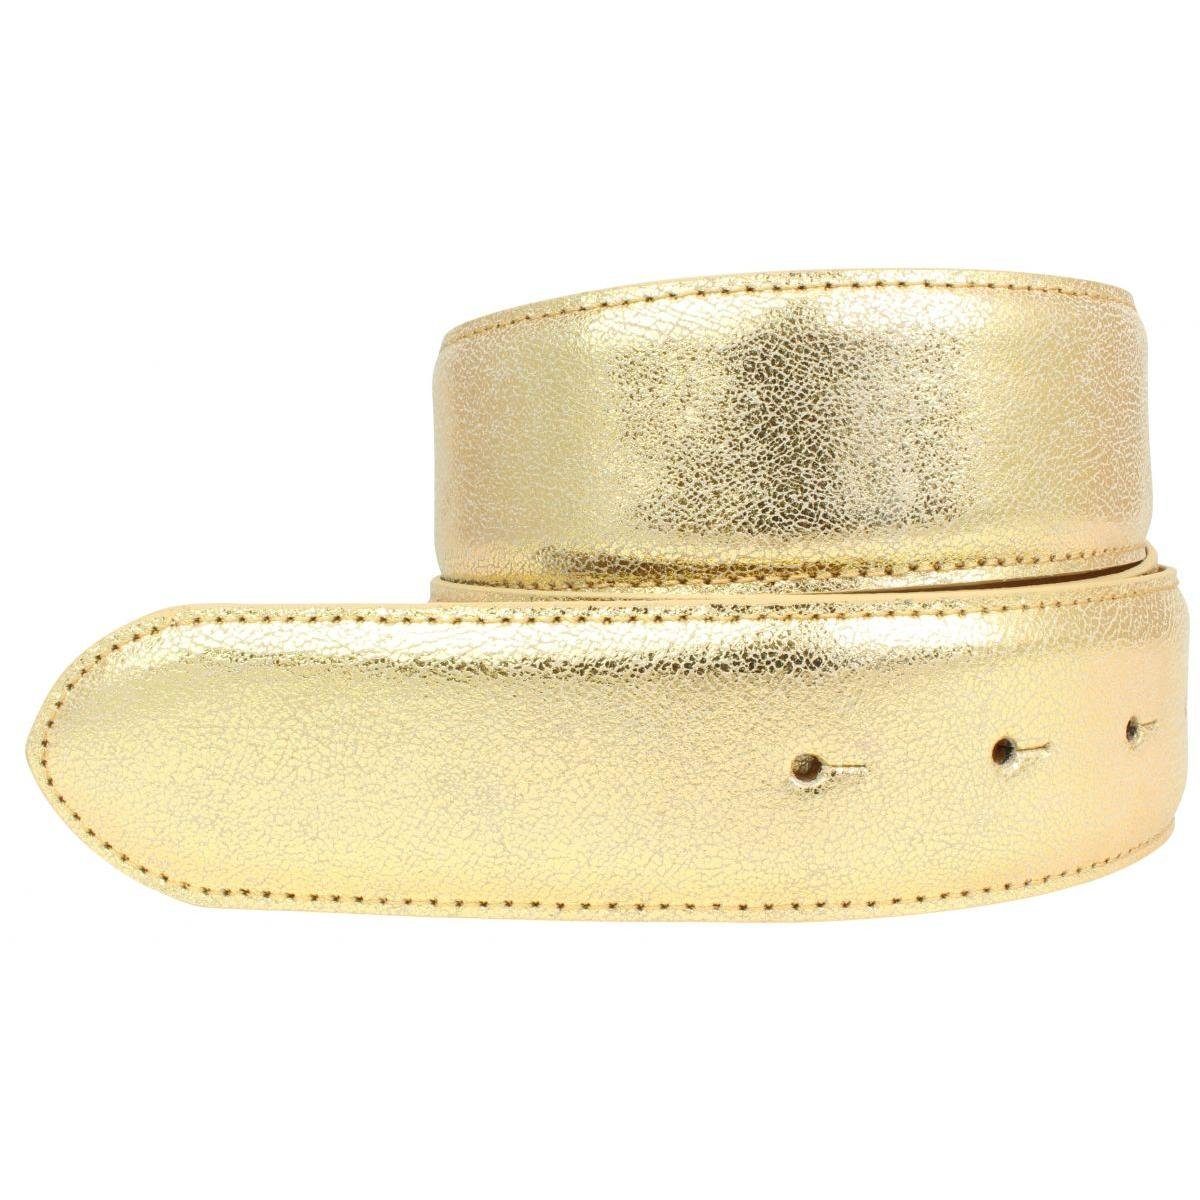 ohne Echt cm Meta Gürtel Schnalle 4 - Gold Leder BELTINGER Ledergürtel Metall-Optik Hochwertiger